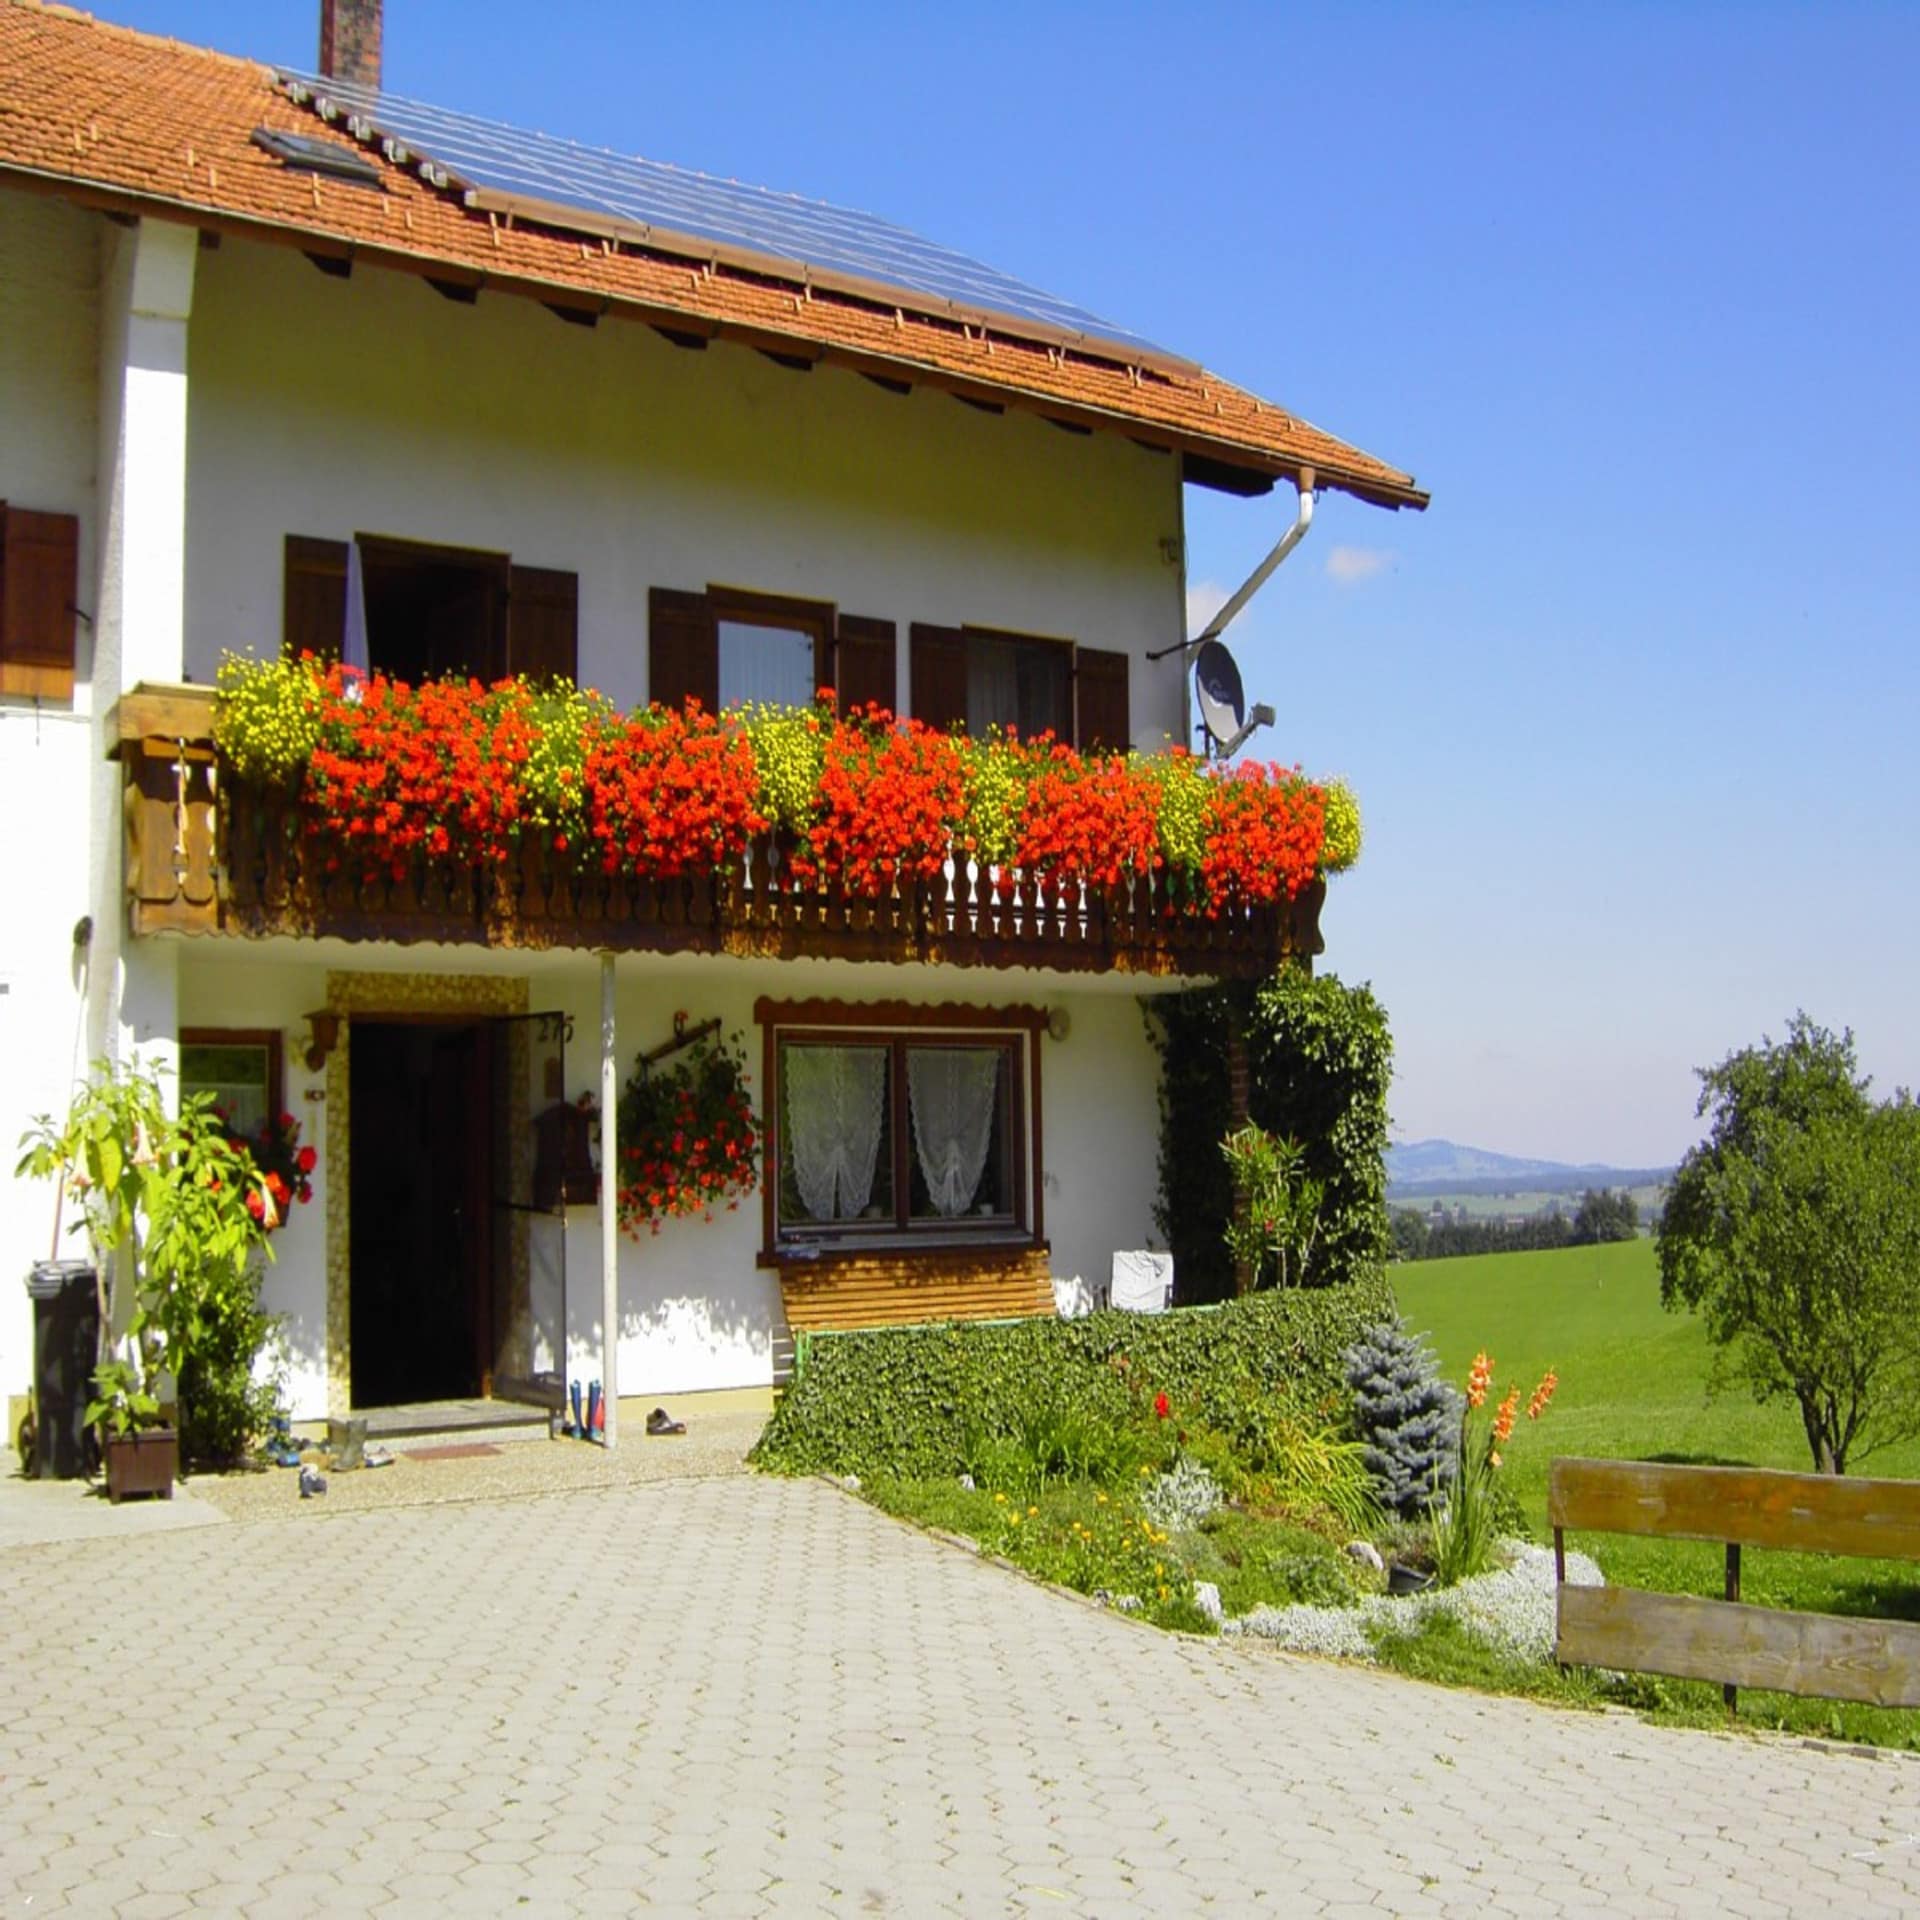 Bauernhaus mit roten Geranien am Balkon und Blick auf die grüne Umgebung im Allgäu. 